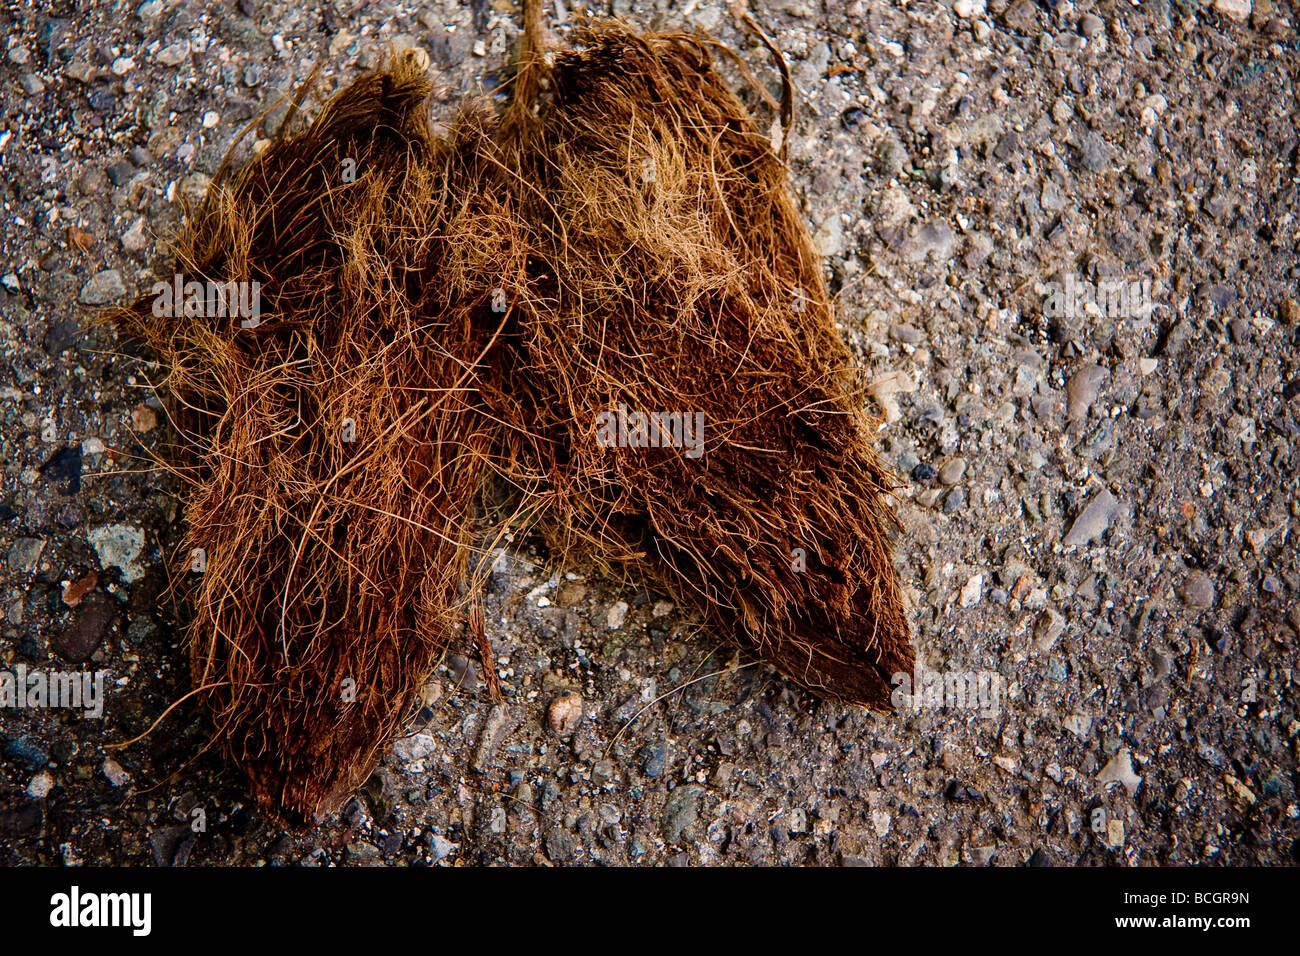 La cáscara exterior peludo de un coco que yacía en el suelo Foto de stock